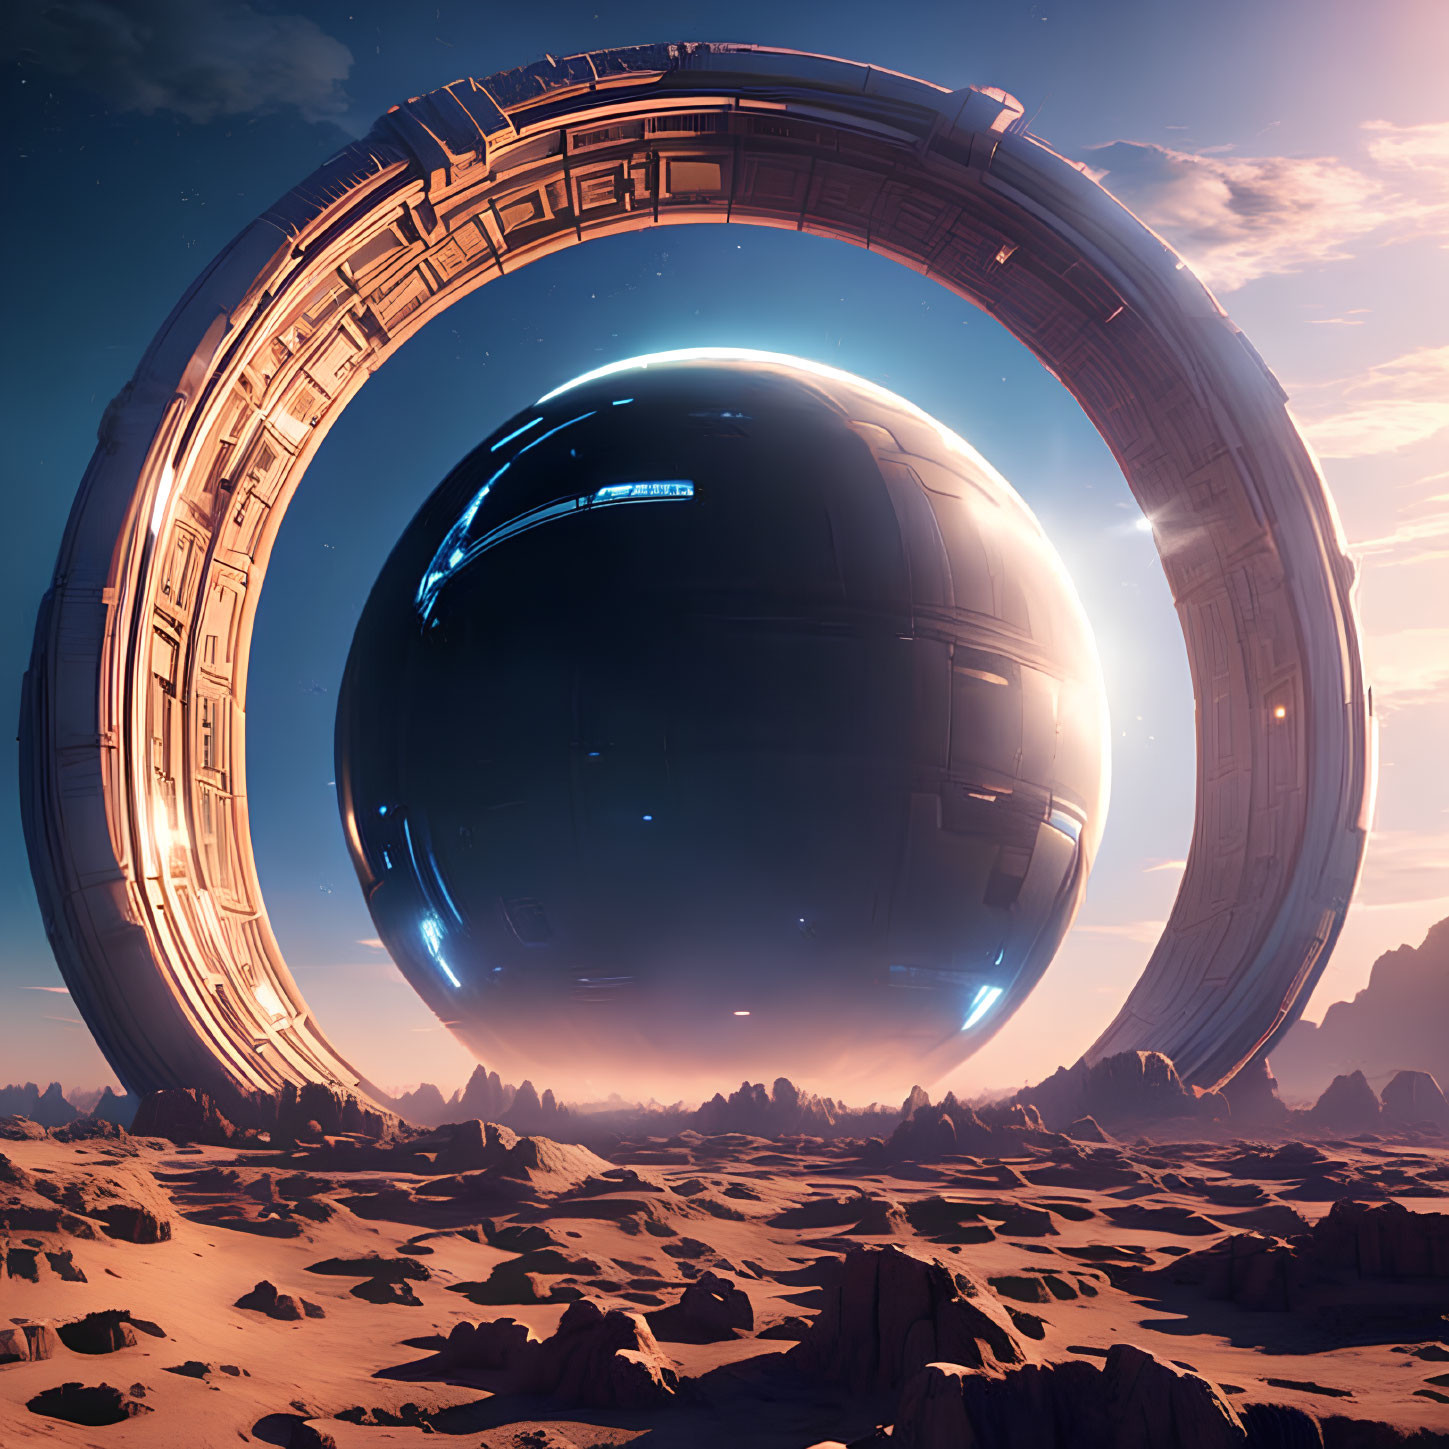 Gigantic ring structure encircles hovering sphere in desert landscape